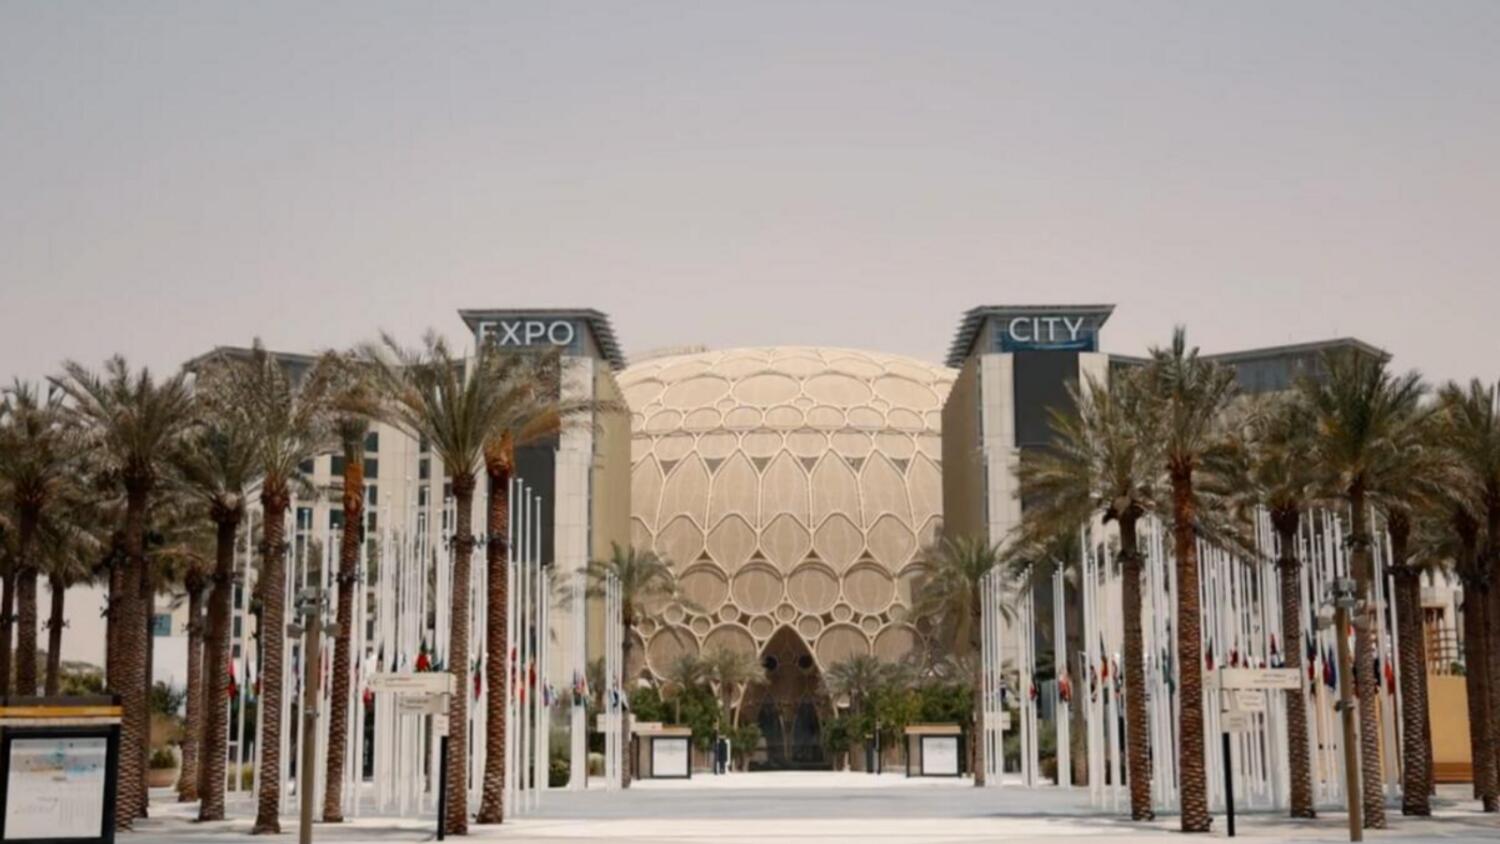 ドバイ万博のレガシーとして「Expo City Dubai」がオープン